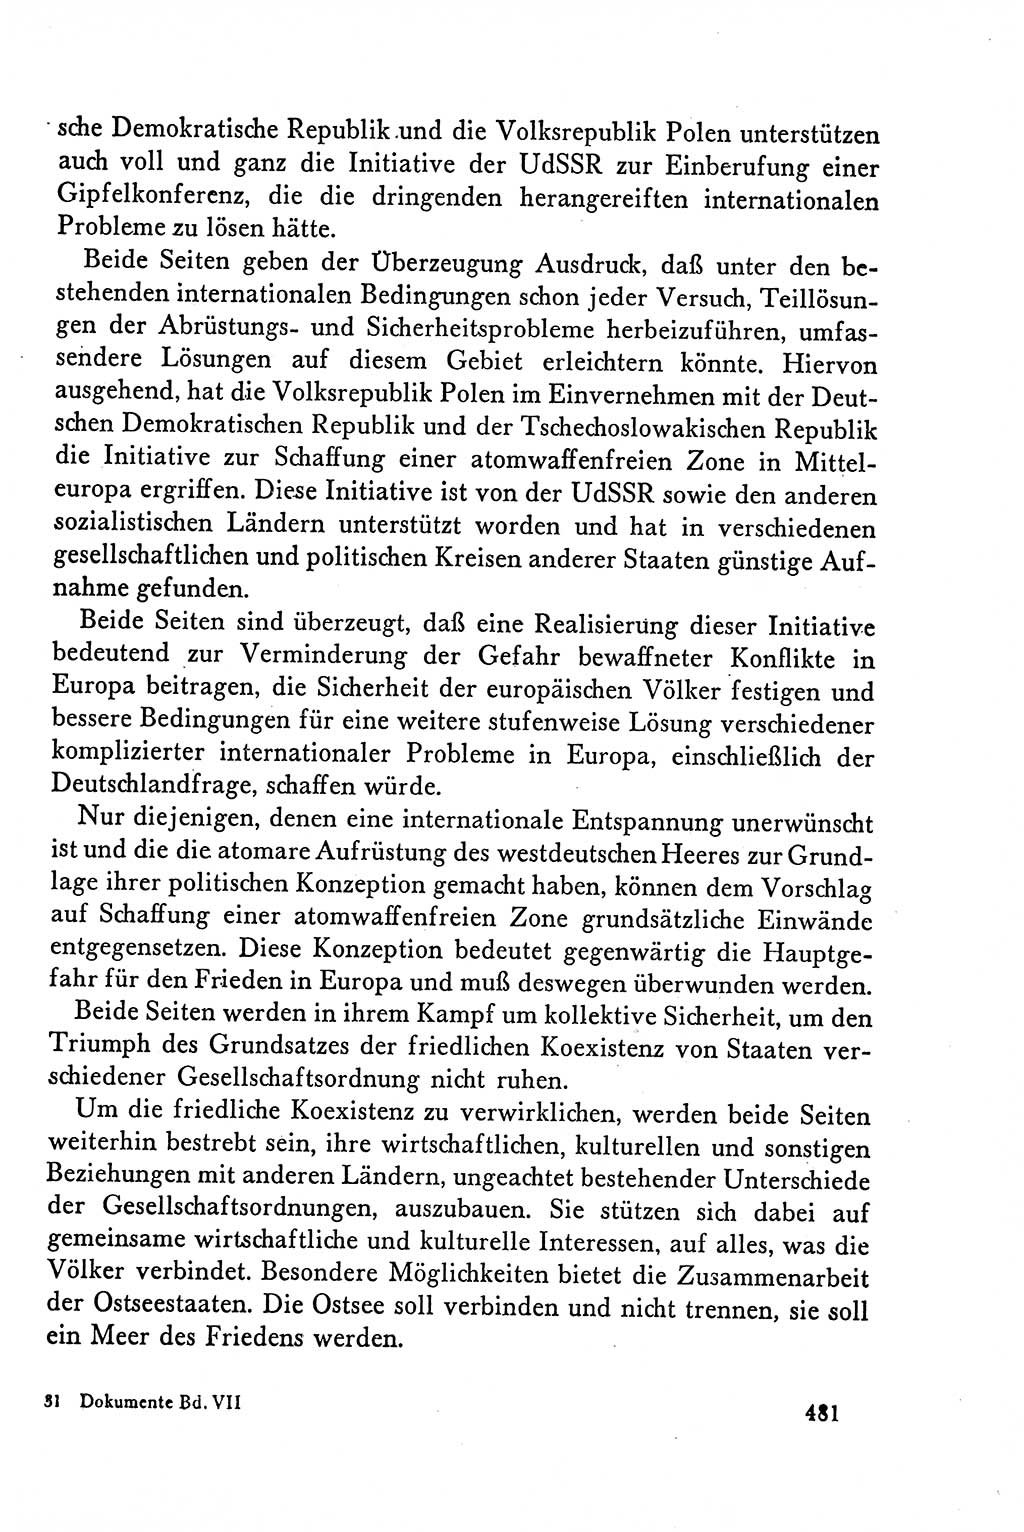 Dokumente der Sozialistischen Einheitspartei Deutschlands (SED) [Deutsche Demokratische Republik (DDR)] 1958-1959, Seite 481 (Dok. SED DDR 1958-1959, S. 481)